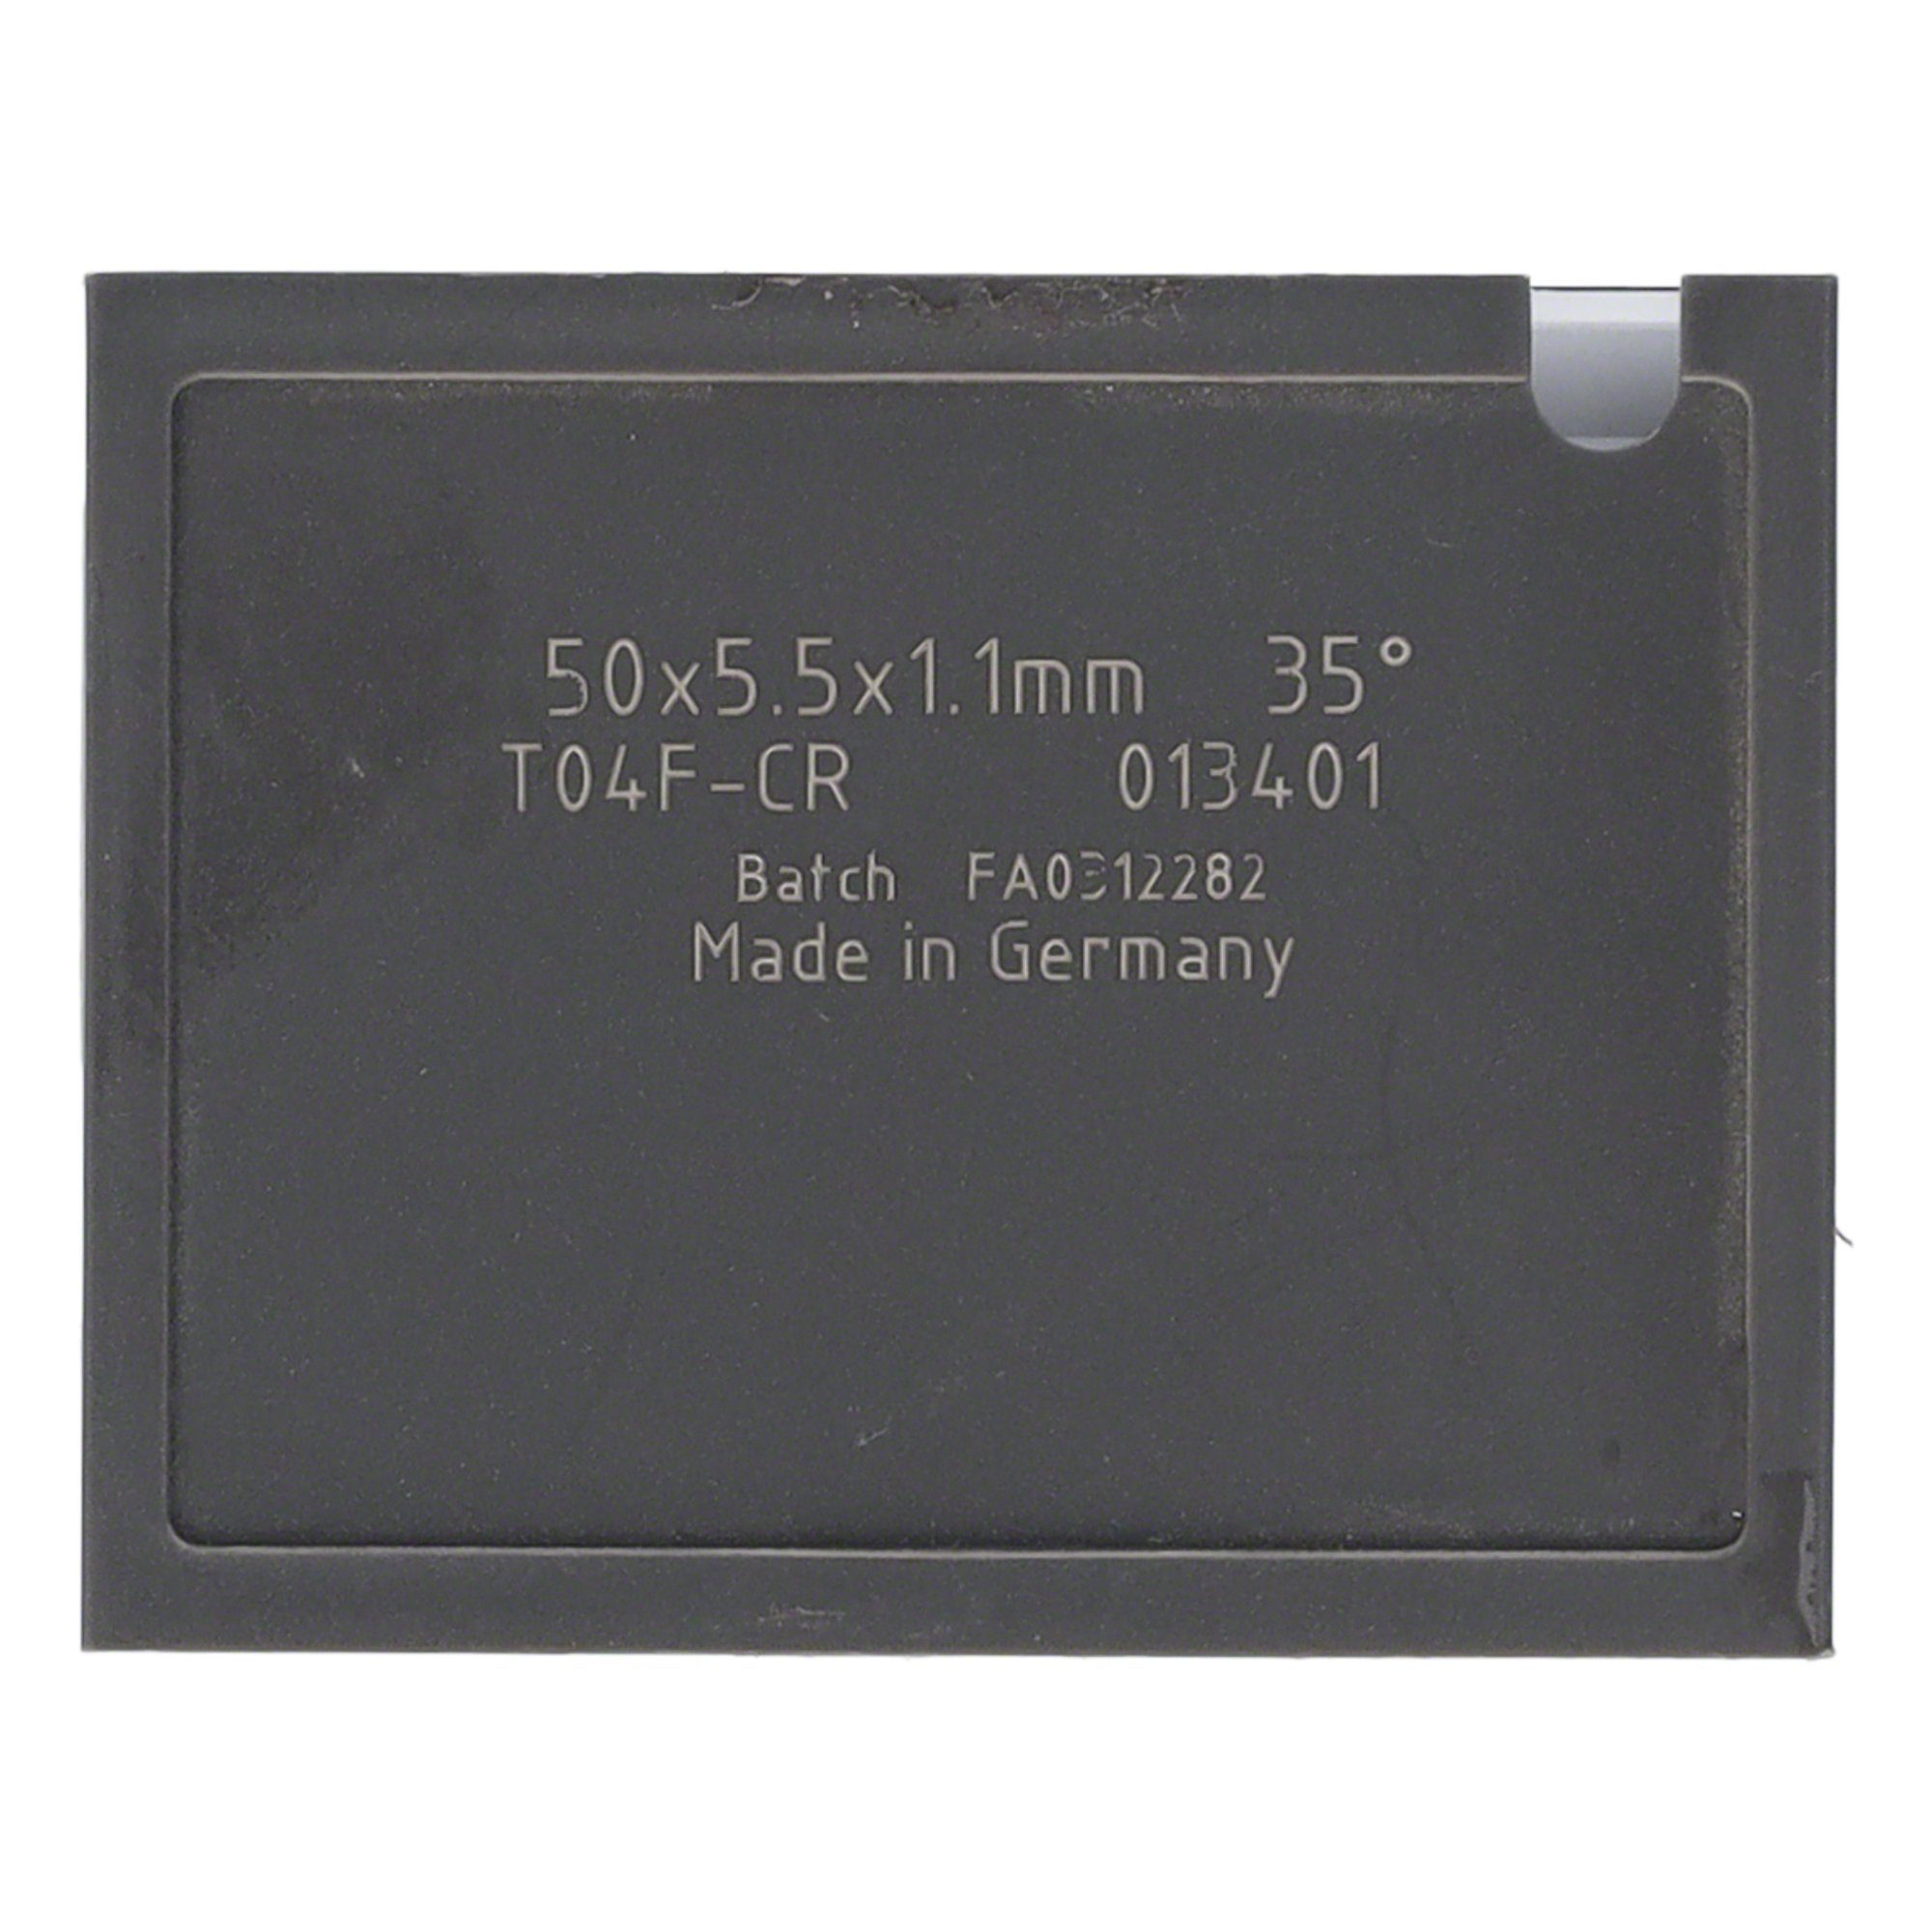 T04F 4 St. Tigra 38 - Wendeplattenfräser 40x5,5x1,1mm Mini-Wendeplatte